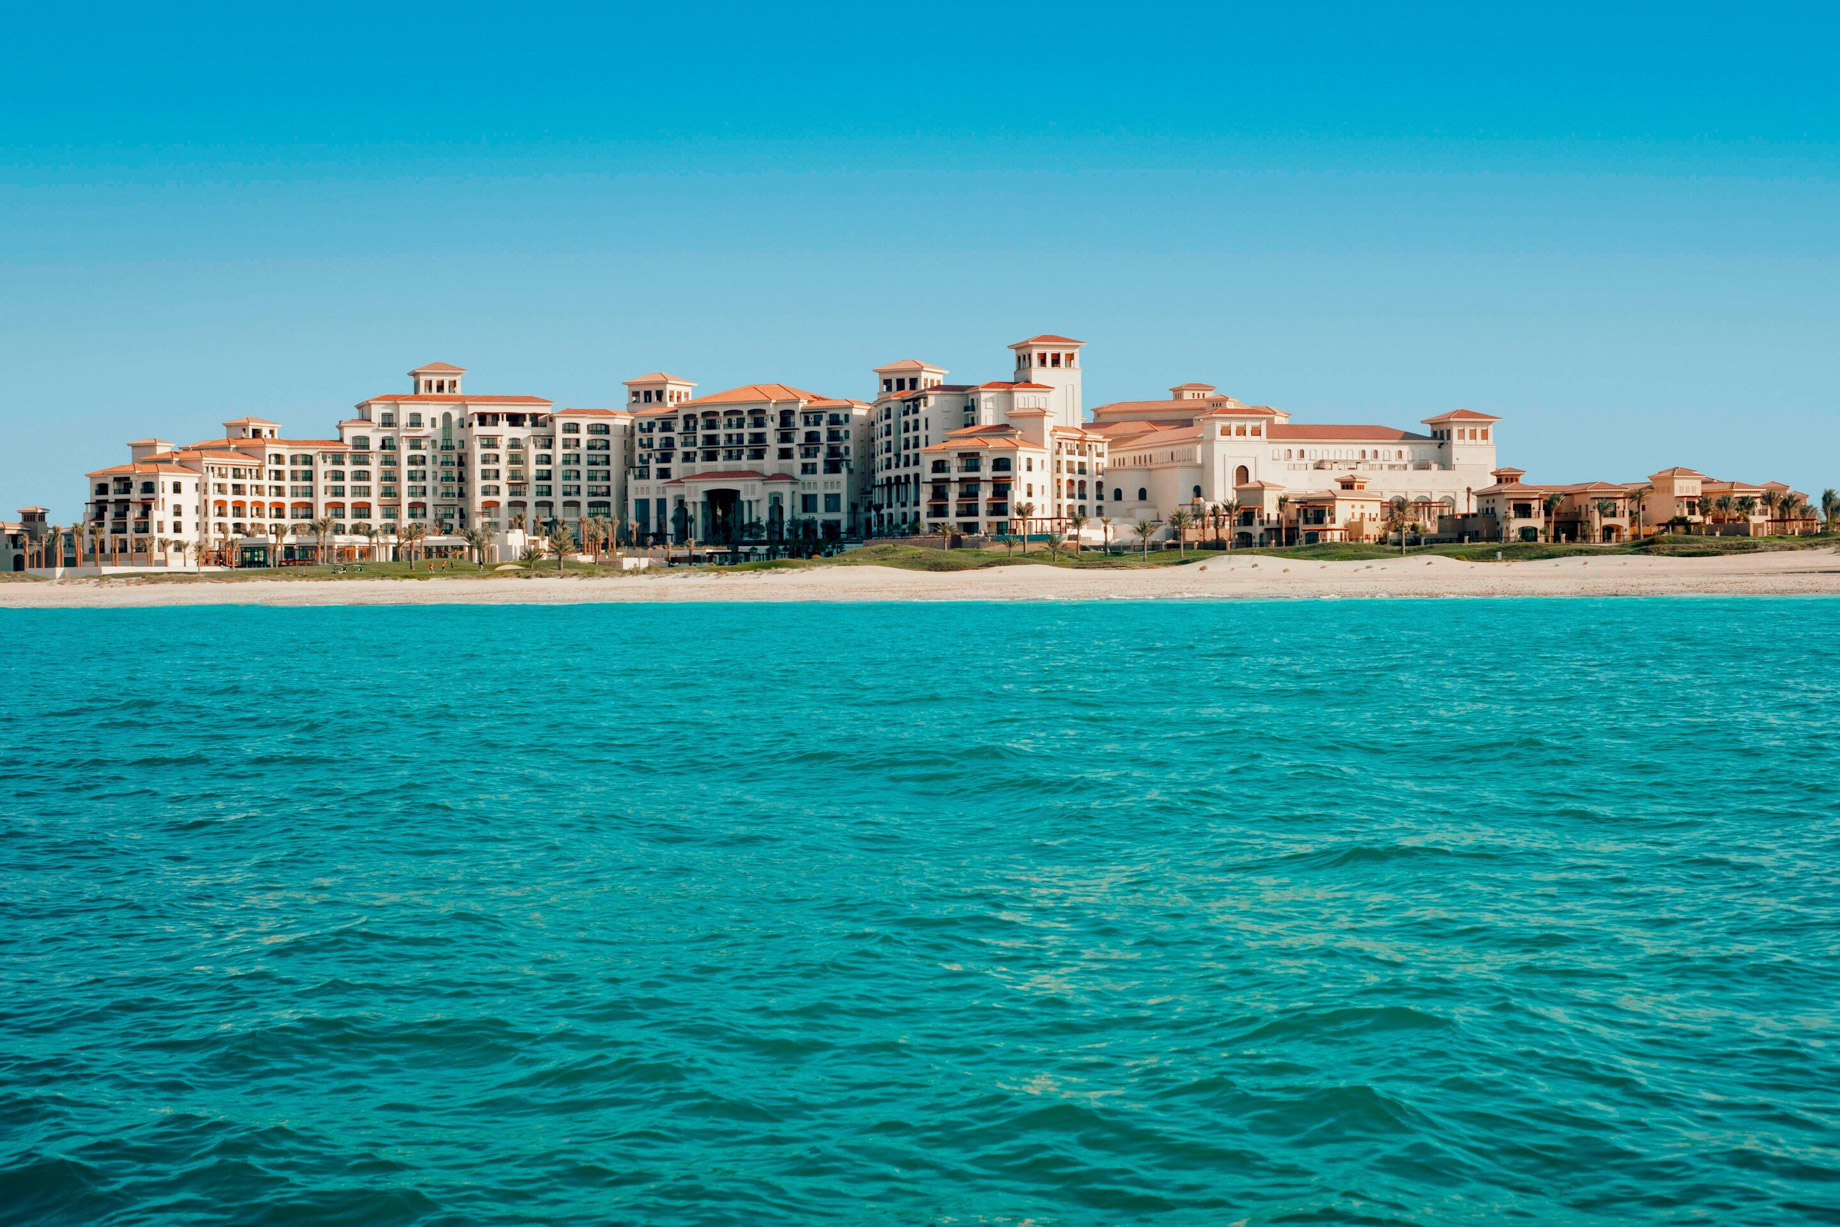 The St. Regis Saadiyat Island Resort – Abu Dhabi, UAE – Resort Exterior Ocean View